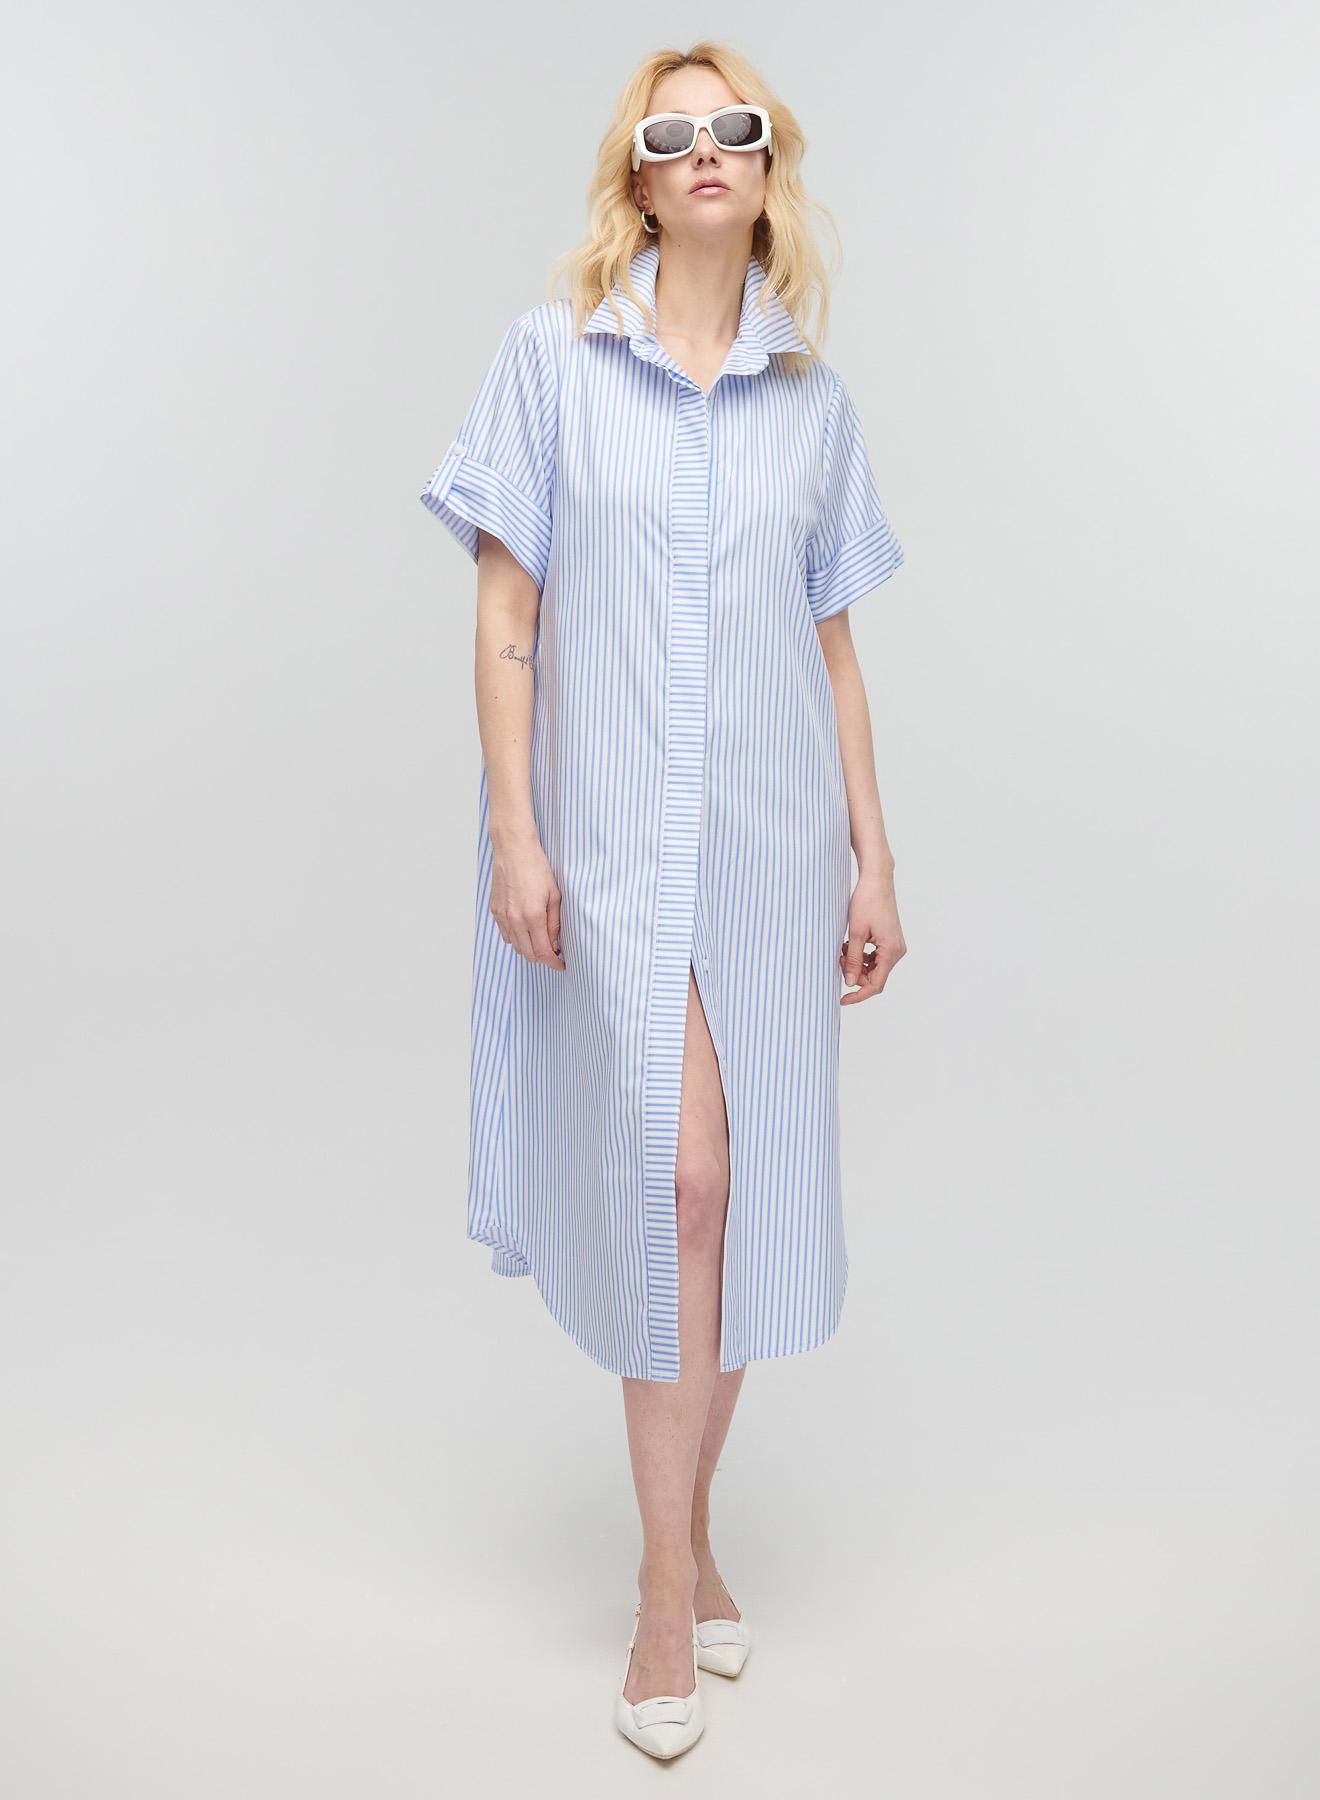 Γαλάζιο-Λευκό Φόρεμα σεμιζιέ με ρίγες και ζώνη Milla - 1